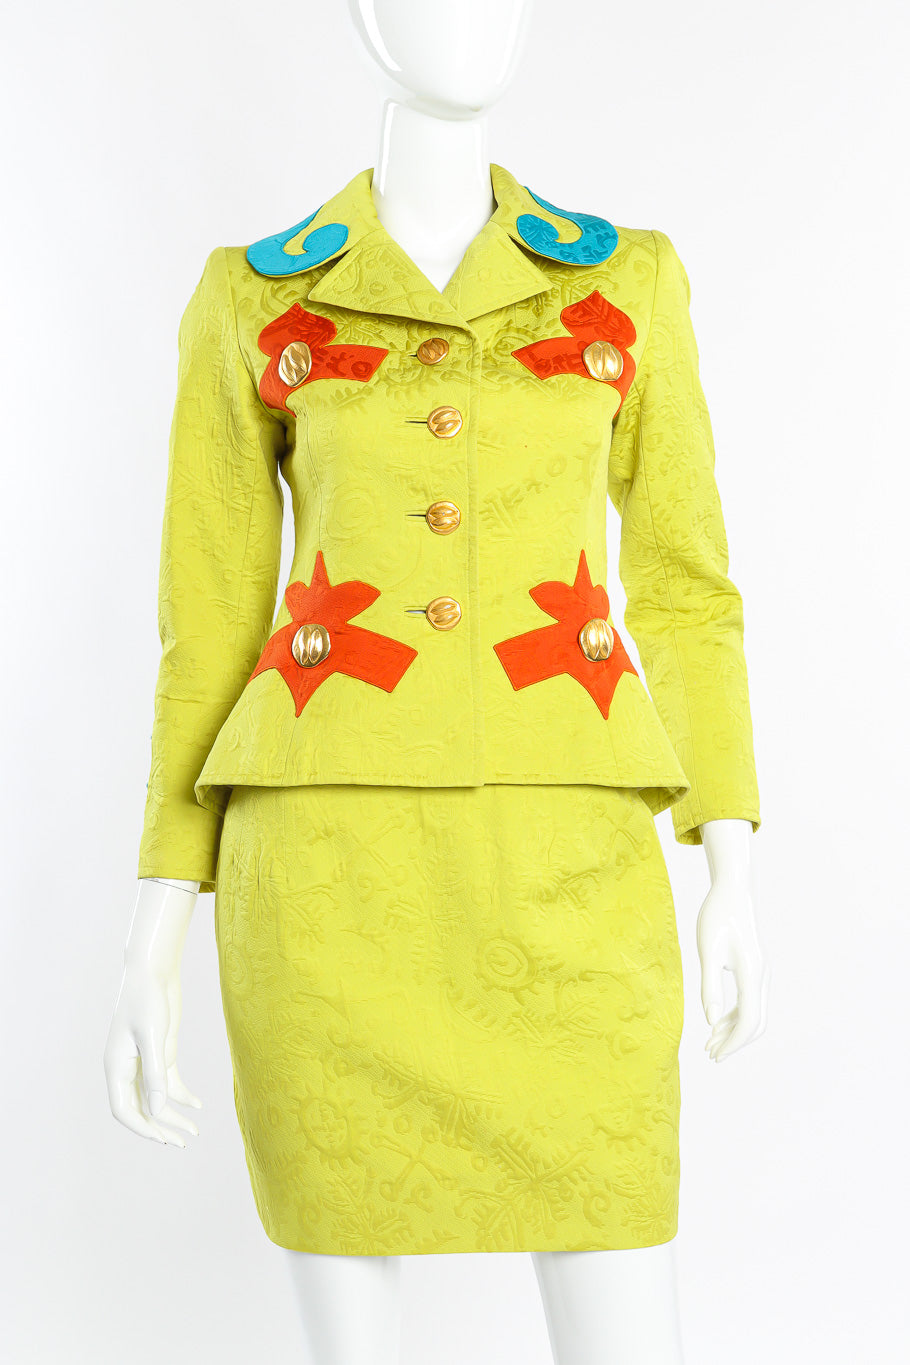 Vintage Christian Lacroix Appliqué Peplum Jacket & Skirt Set front view on mannequin @recessla